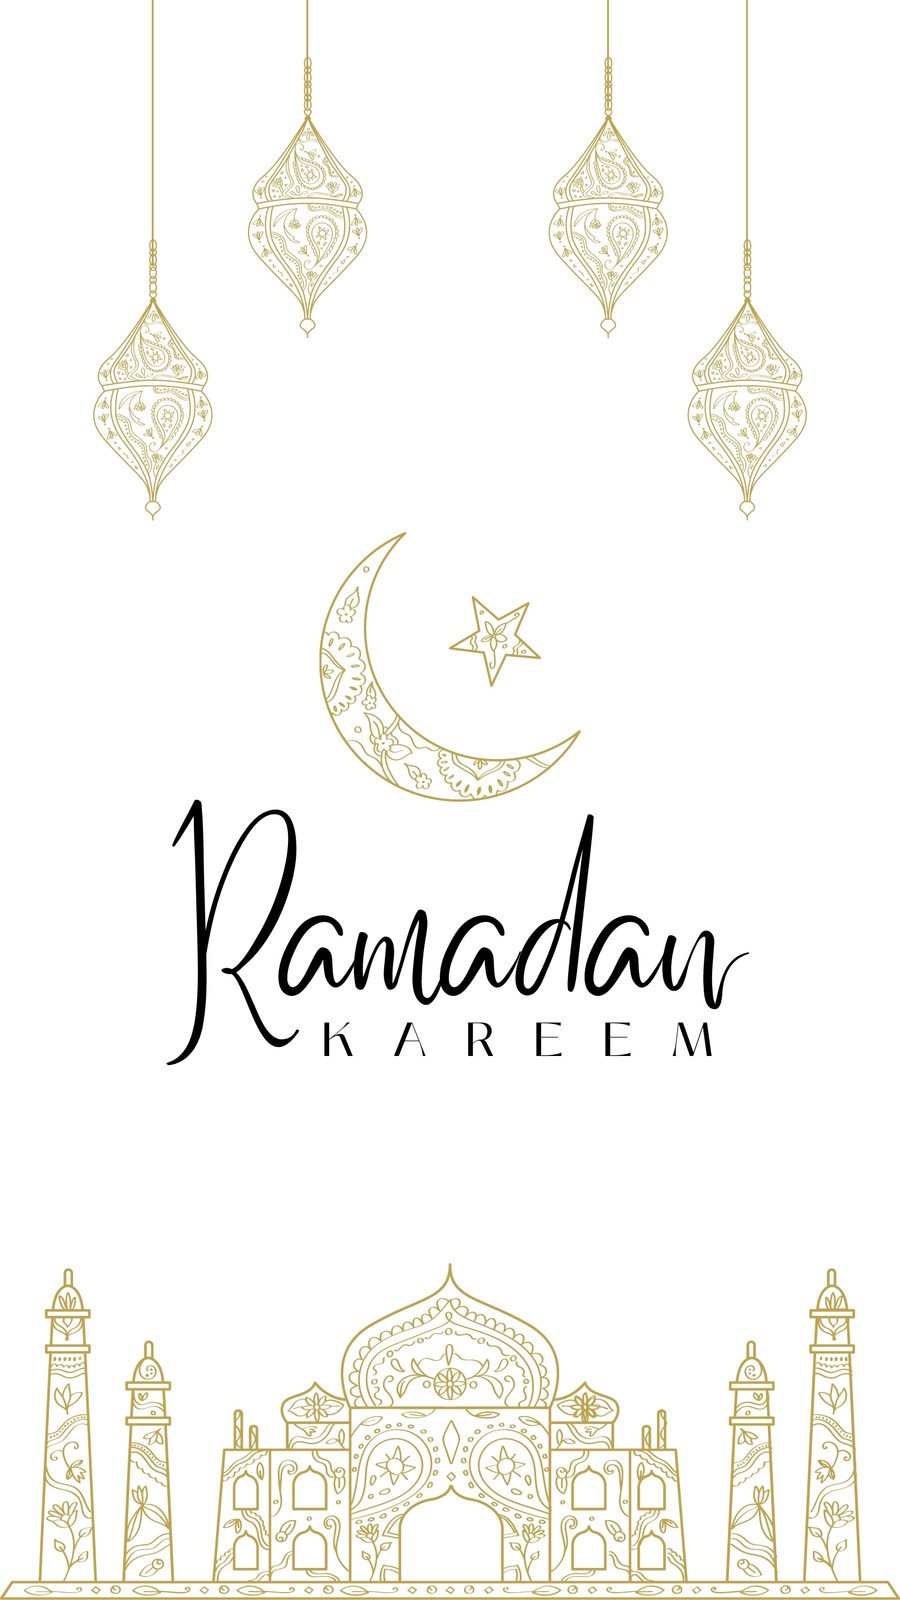 Ramadan - tháng trọng đại với người Hồi giáo trên toàn thế giới. Hãy tìm hiểu thêm về những hoạt động và nghi thức trong tháng Ramadan để hiểu rõ hơn về tôn giáo và văn hóa của những người Hồi giáo.